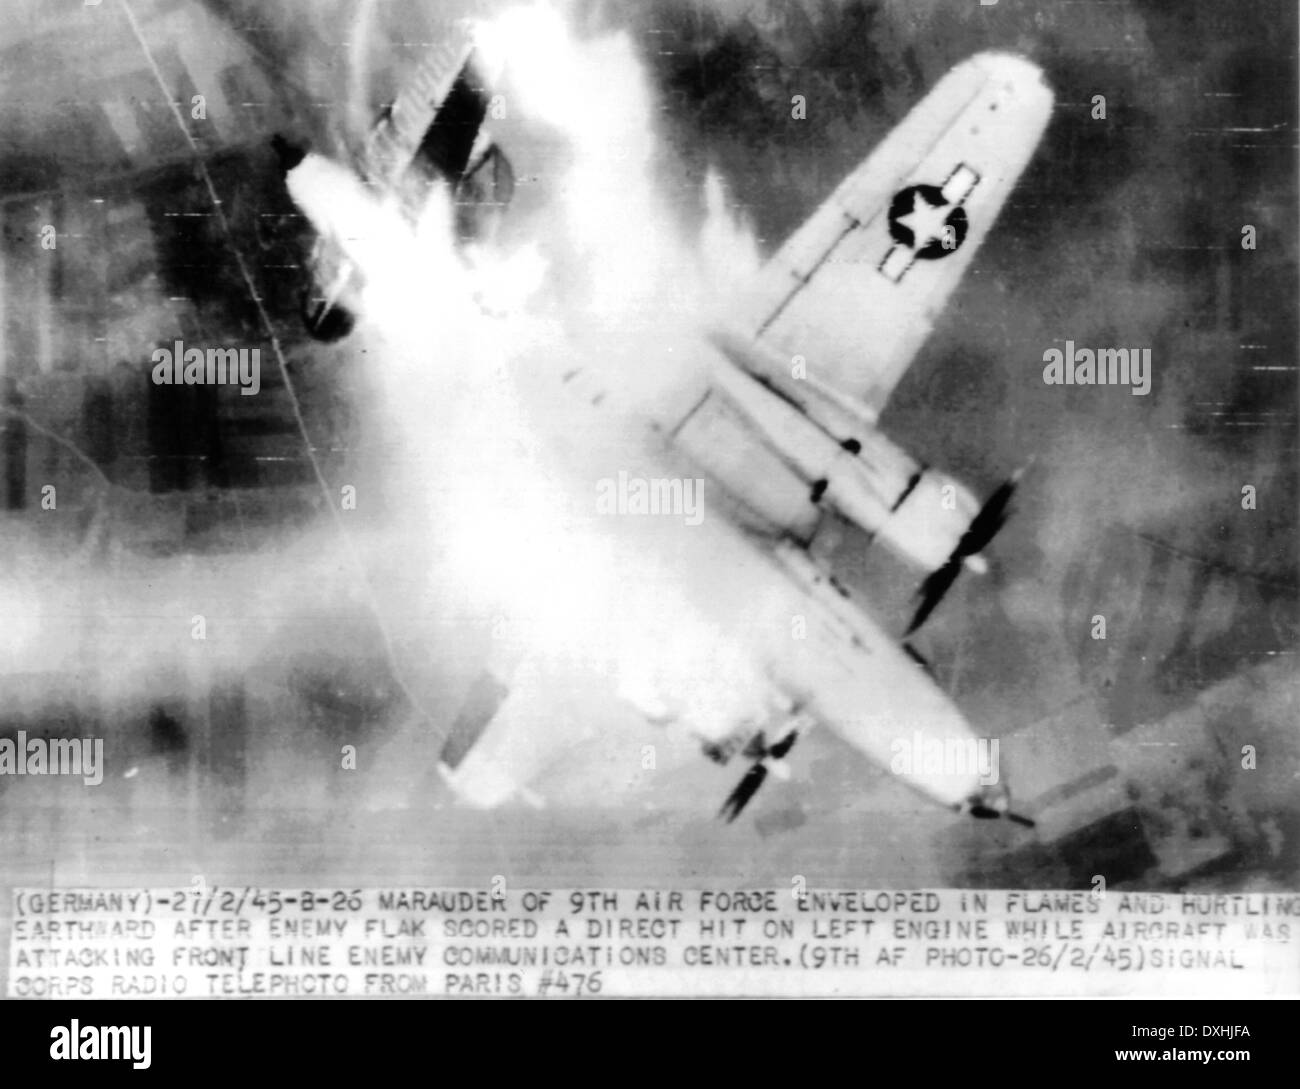 US Army AIRFORCE Marauder prende un colpo diretto dal nemico flak su Erkelenz, Germania il 26 febbraio 1945. Vedere la descrizione seguente Foto Stock